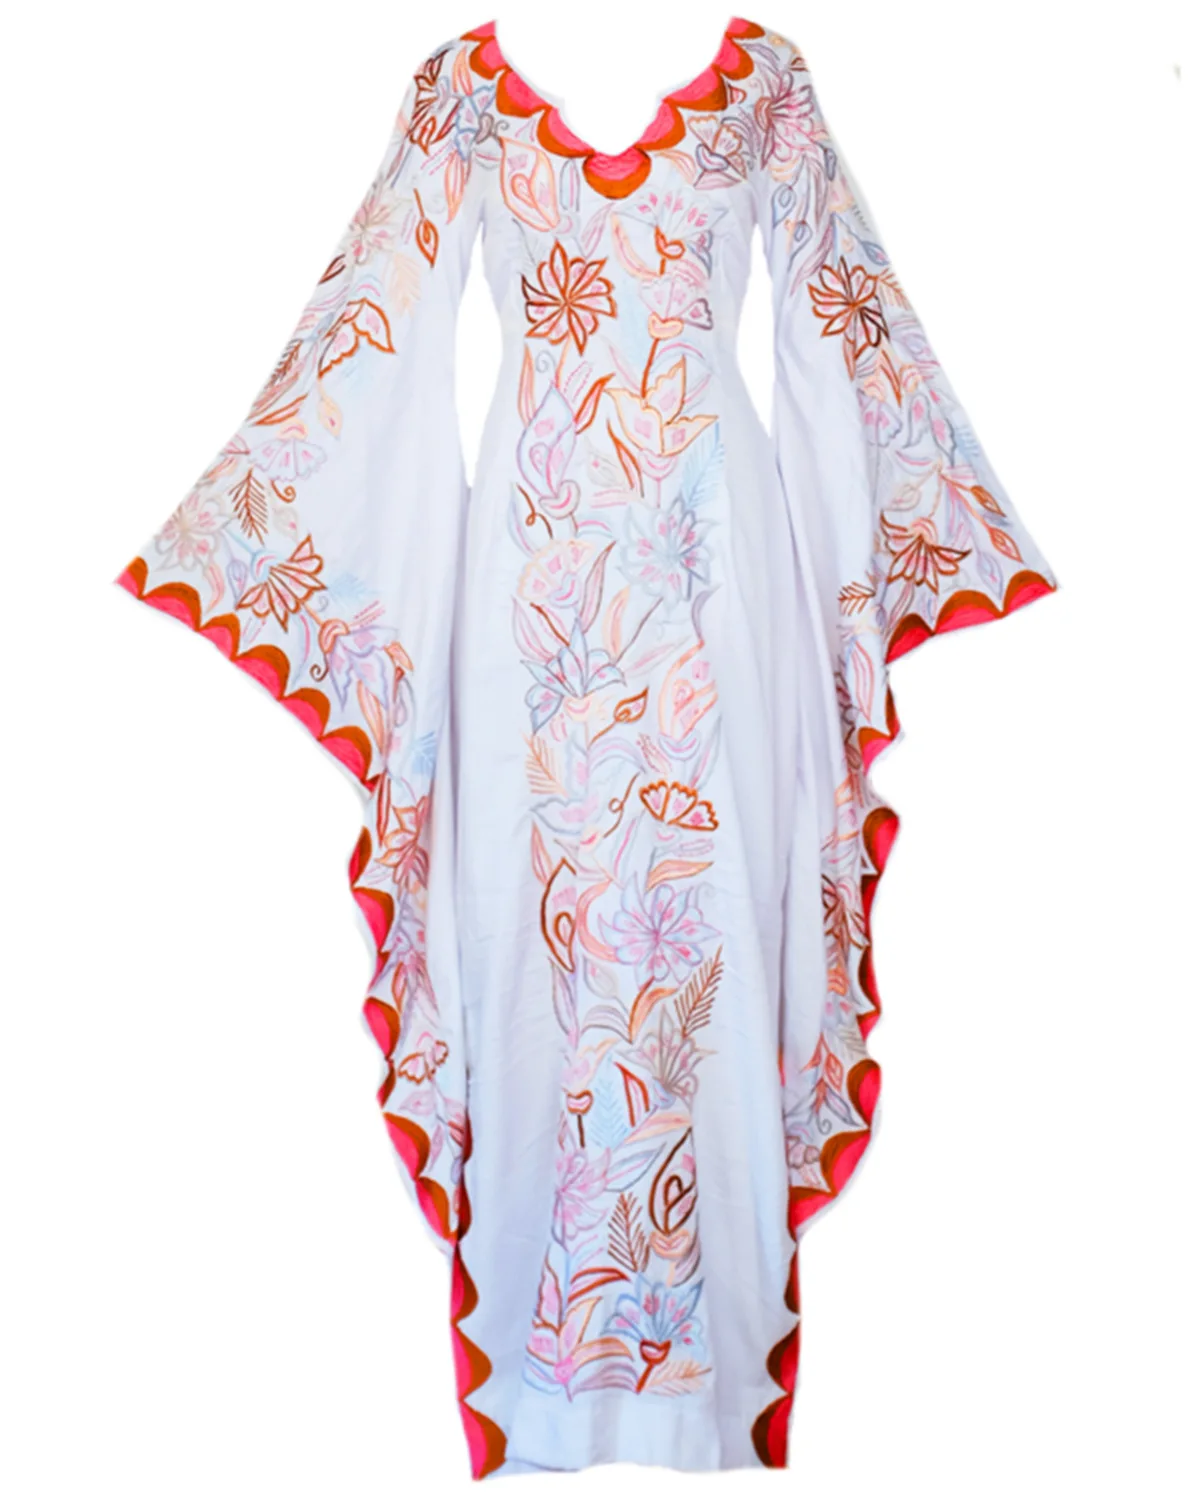 Купальный костюм Сарафан женский летний купальник купальный костюм закрывающие Купальники-парео женские платья юбка богемная печать